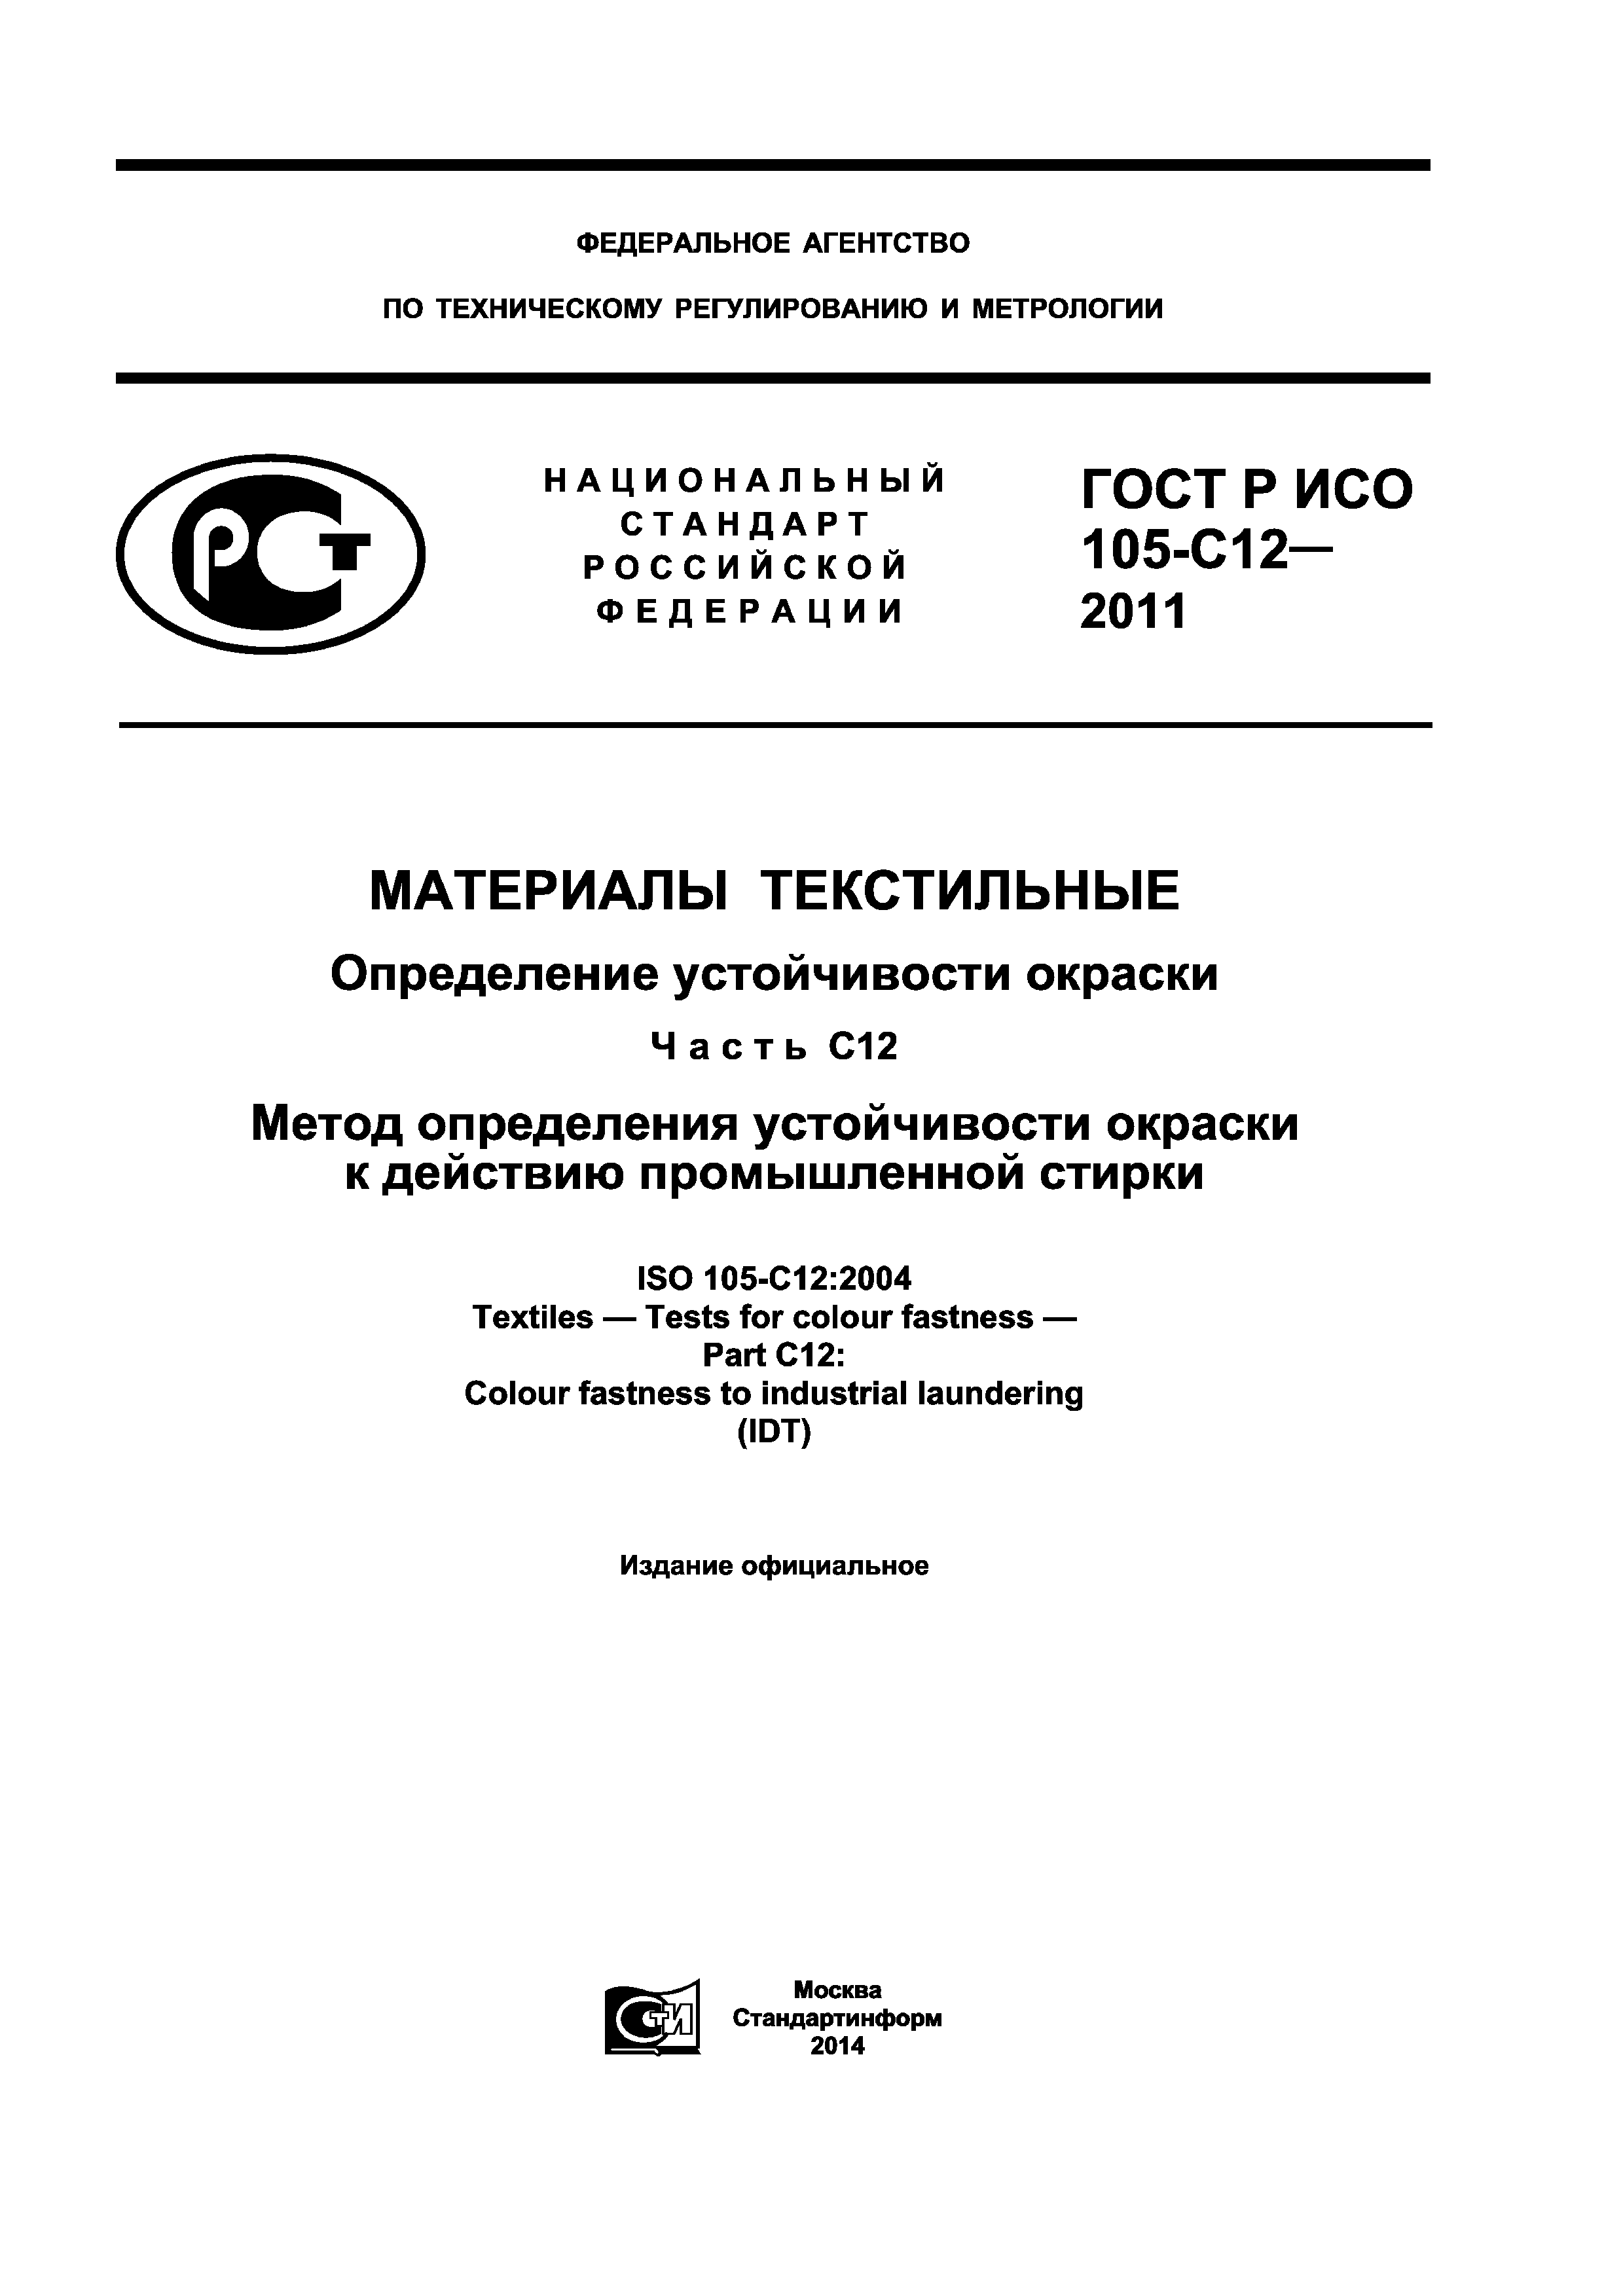 ГОСТ Р ИСО 105-C12-2011